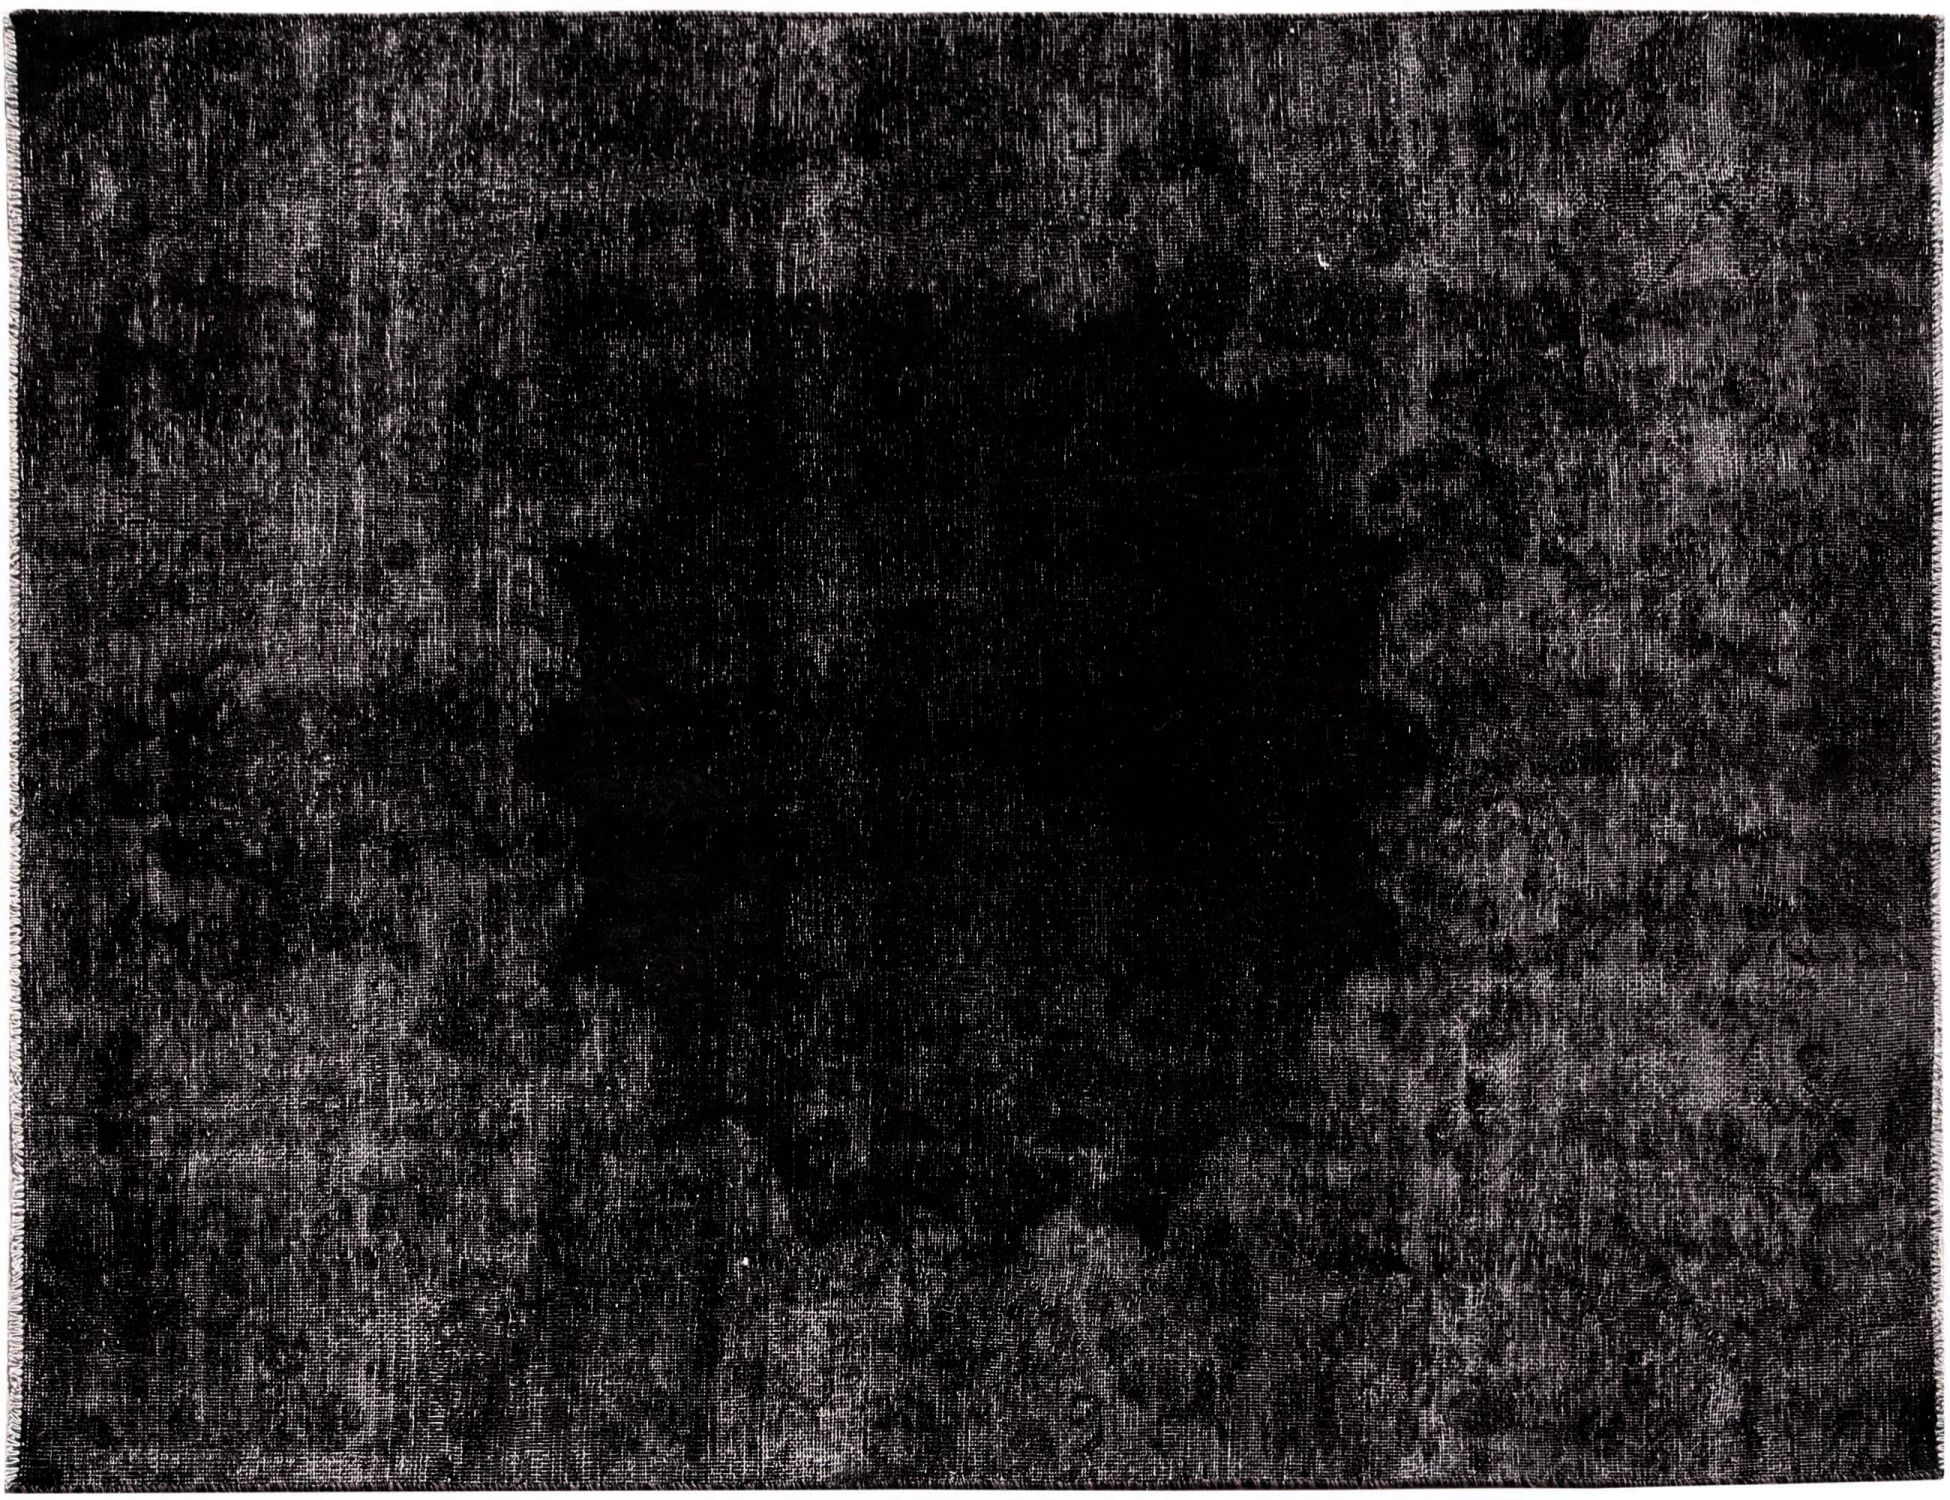 Persian Vintage Carpet  black <br/>198 x 138 cm